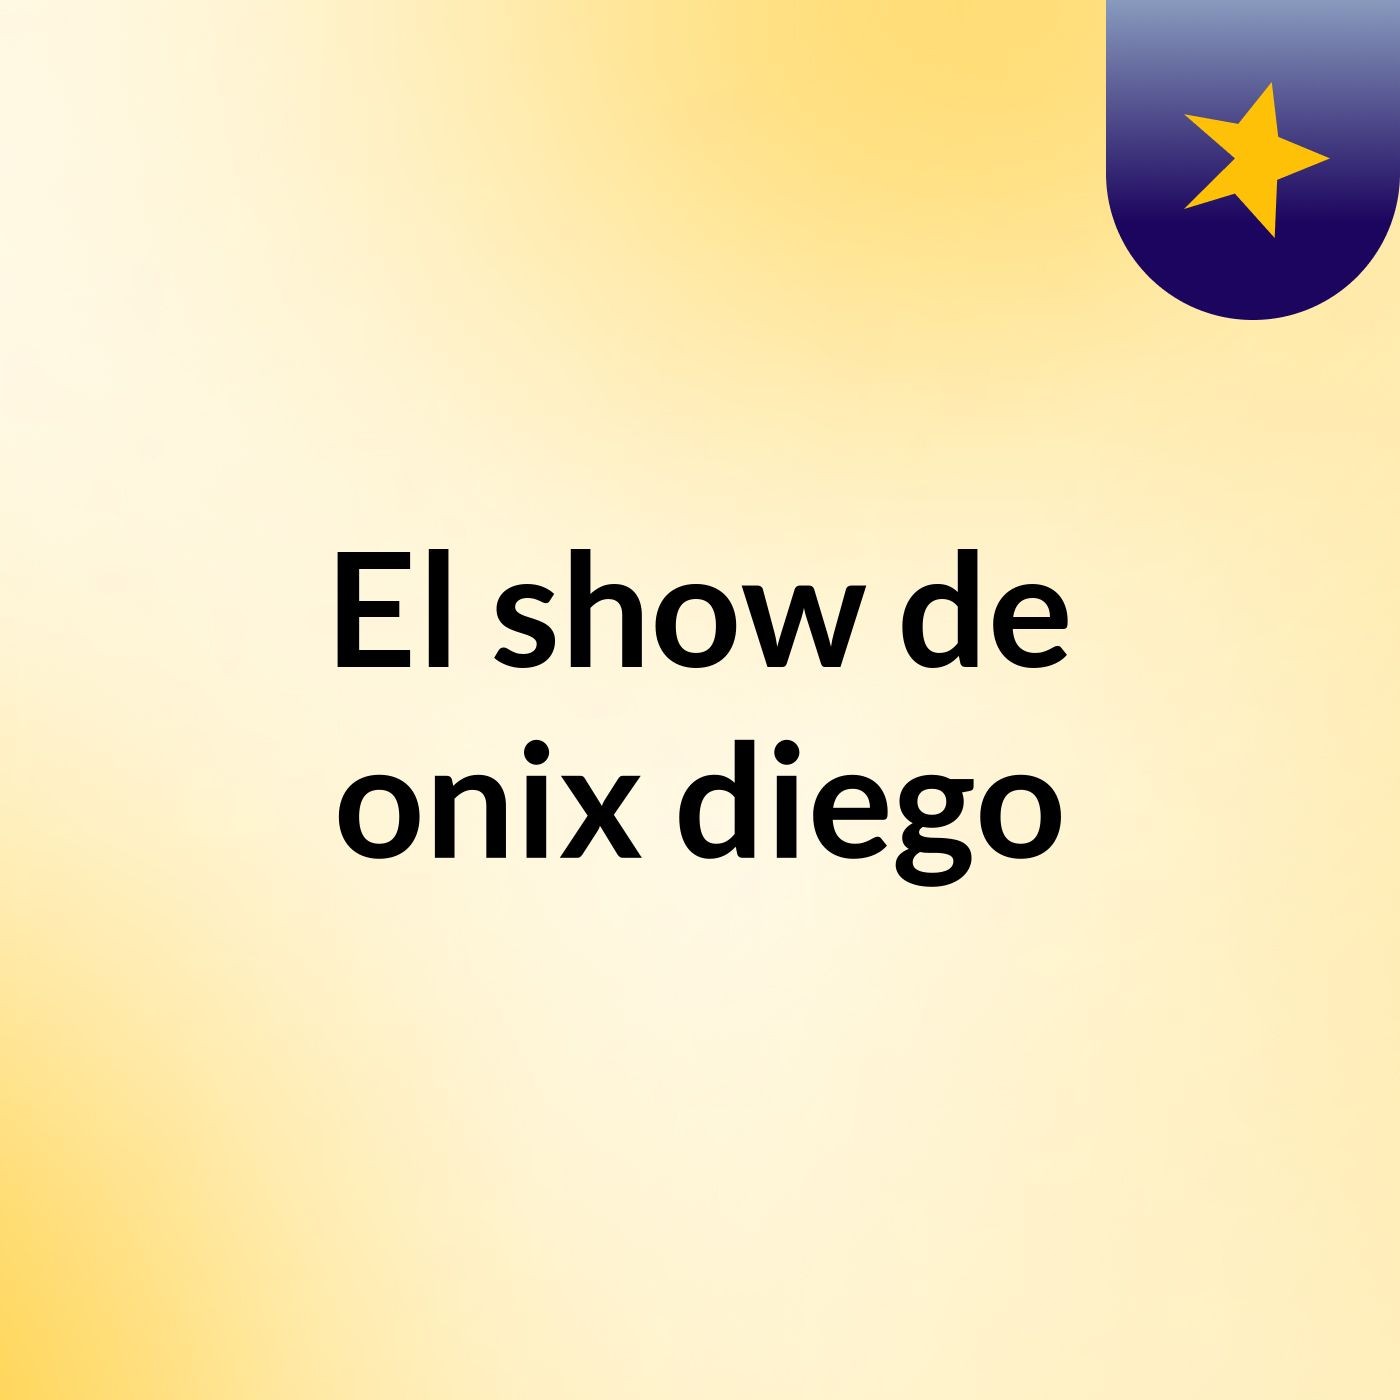 Episodio 2 - El show de onix diego